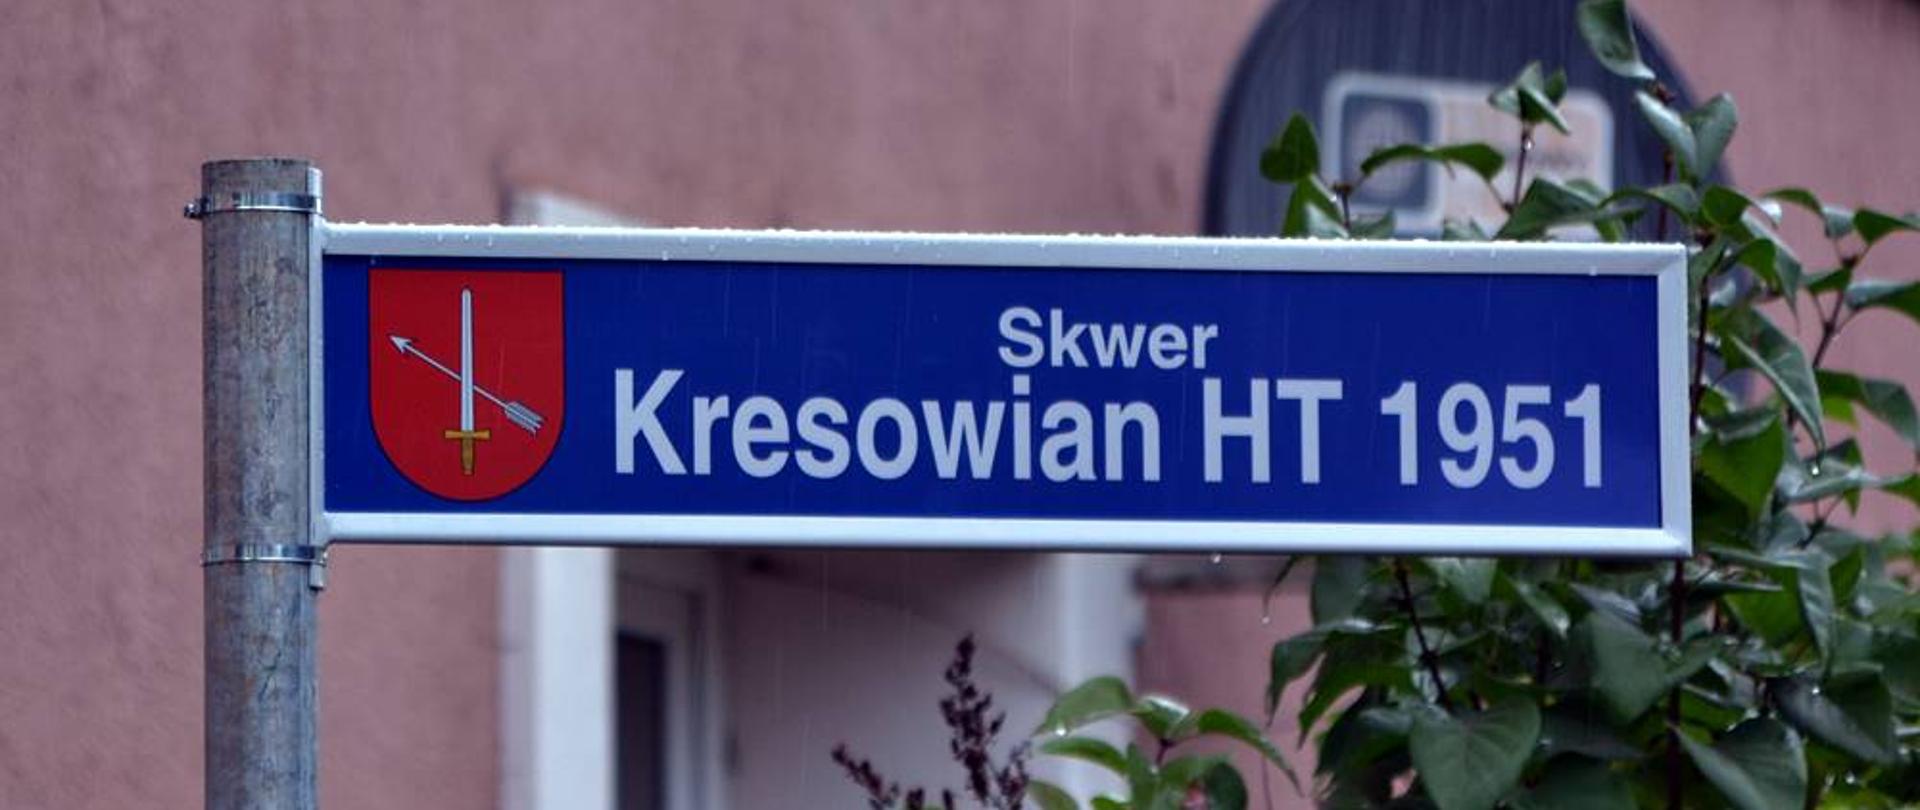 Zdjęcie przedstawia znak z napisem na niebieskim tle "Skwer Kresowian HT 1951" W tle widać rośliny oraz budynek z różową elewacją. 